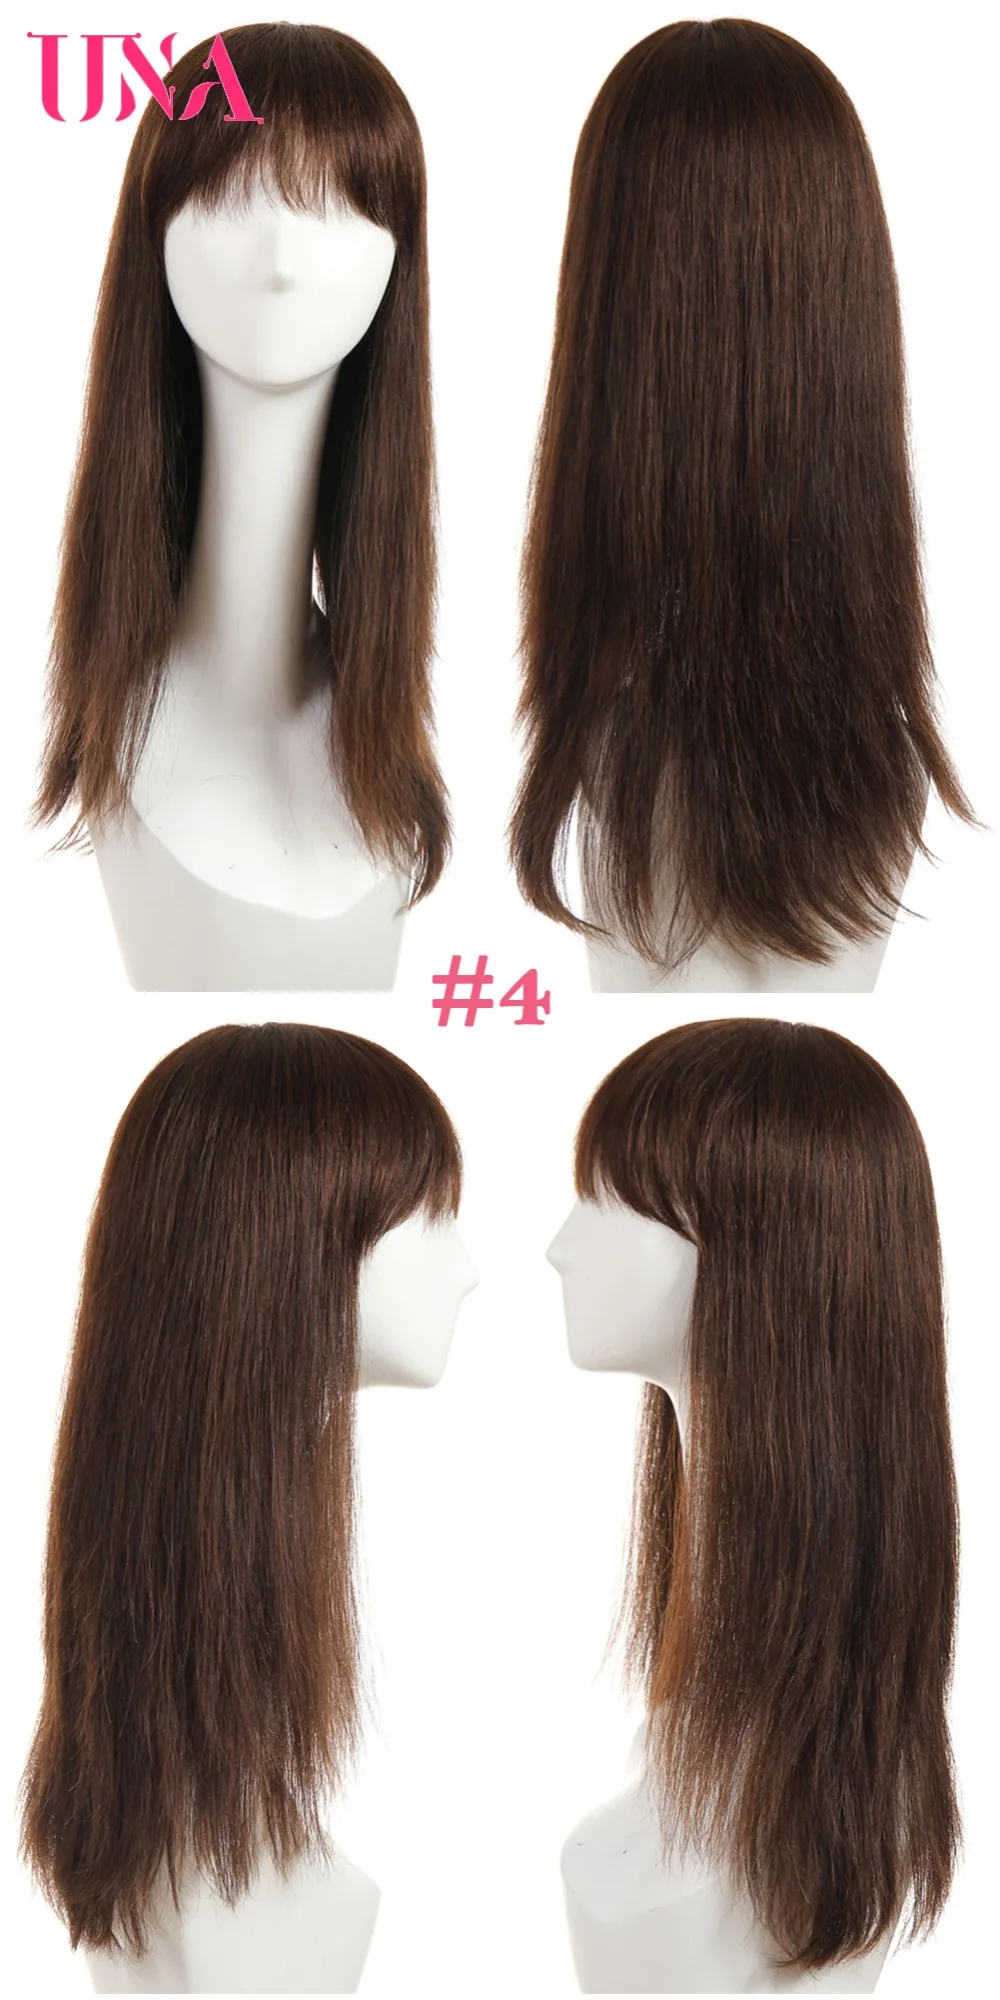 UNA человеческие волосы парики для женщин длинные прямые человеческие волосы 150% плотность индийские прямые человеческие волосы парики не Реми машинные парики